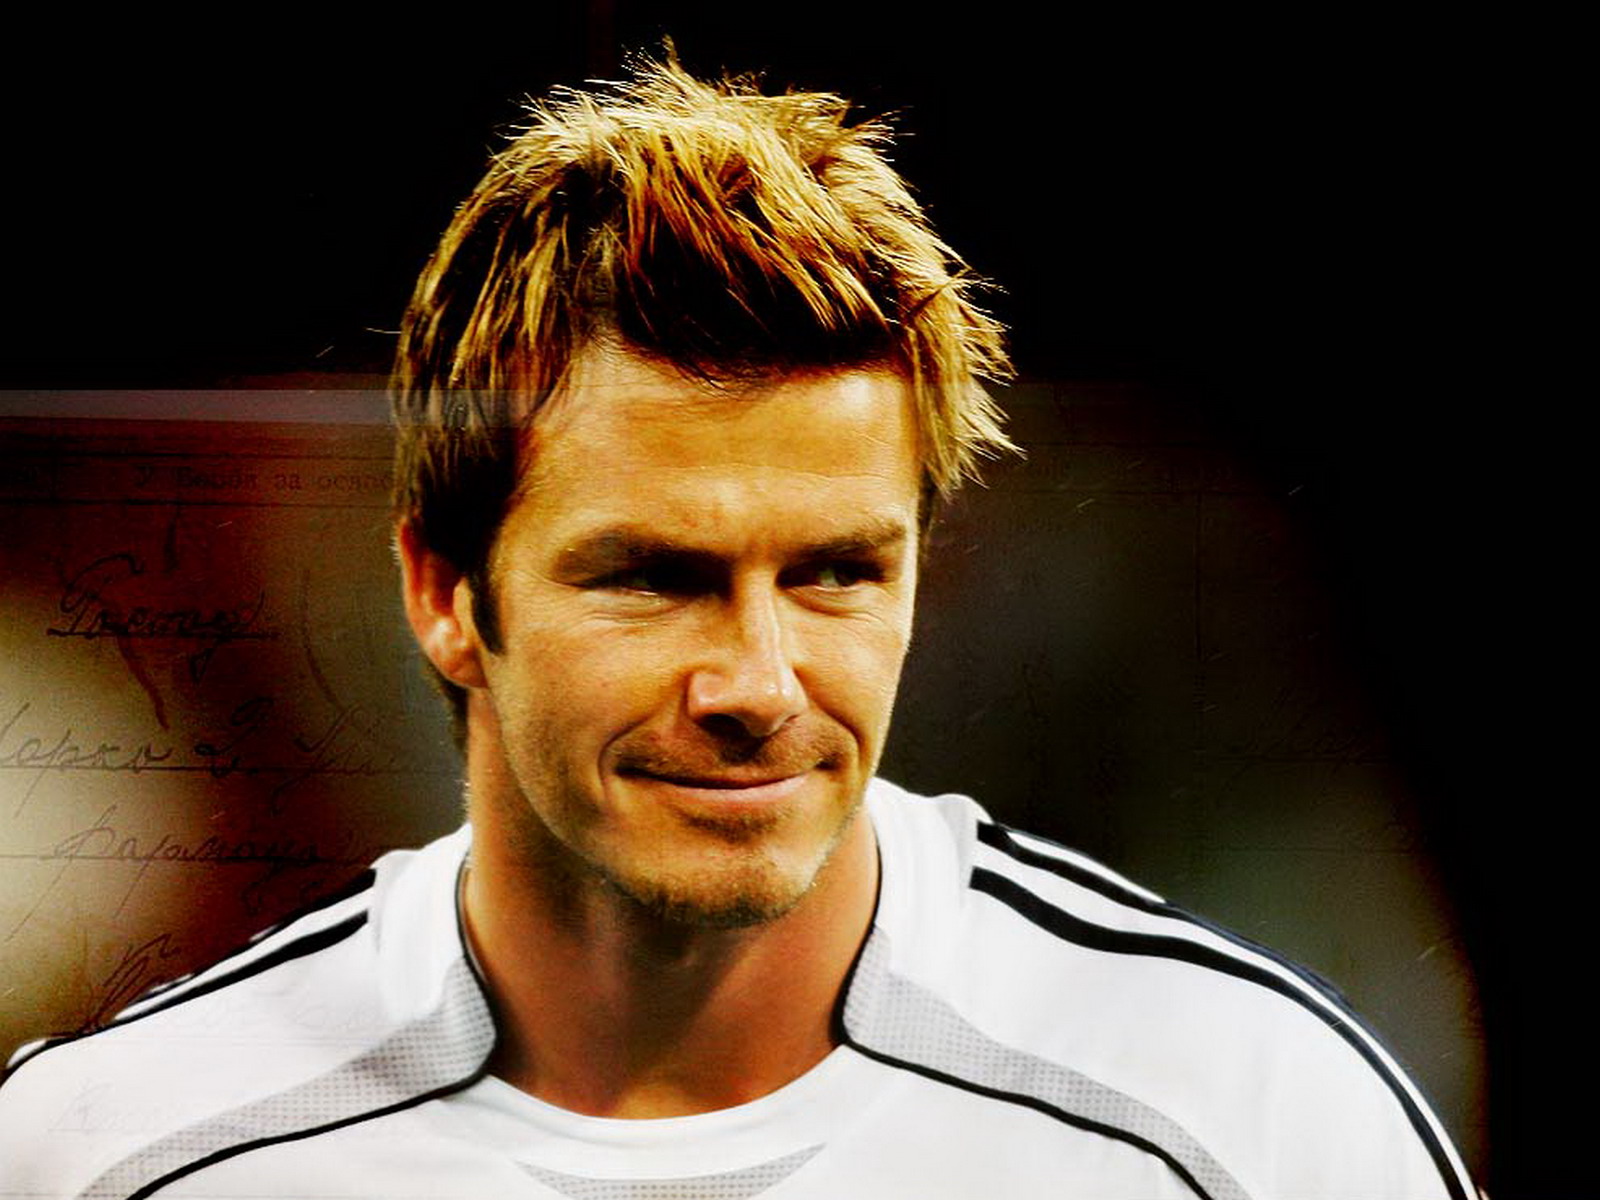 David Beckham Wallpapers: David Beckham Hot Wallpapers